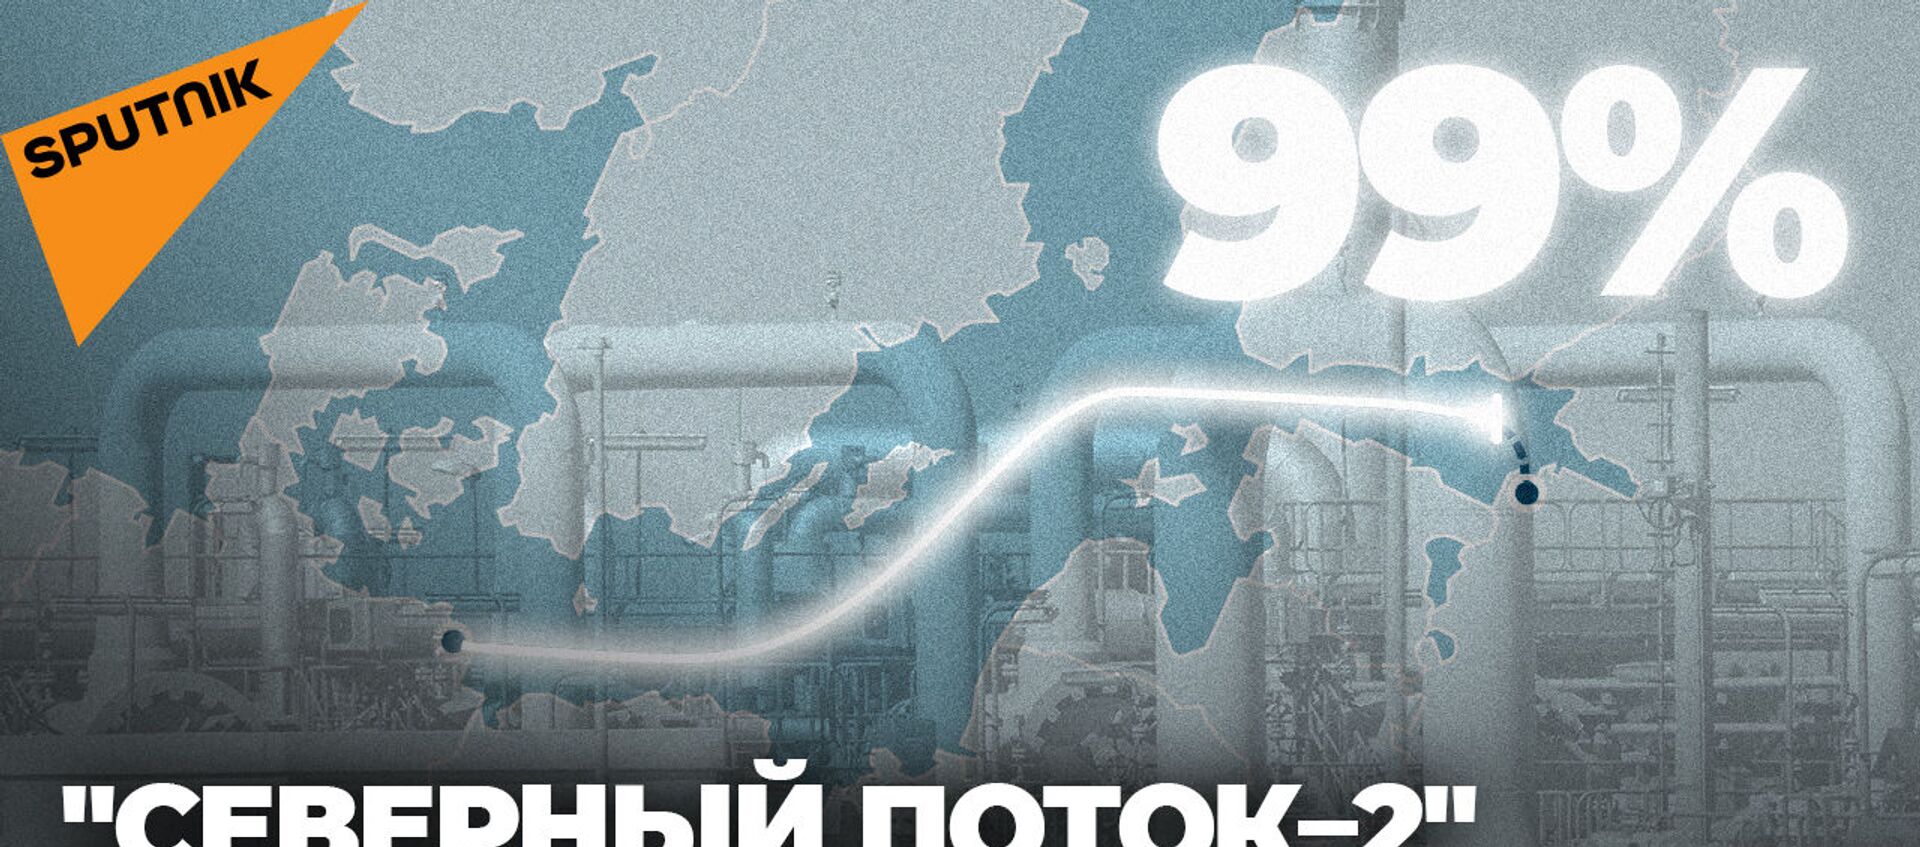 Северный поток - 2 почти готов: построено 99% газопровода - видео - Sputnik Грузия, 1920, 30.07.2021